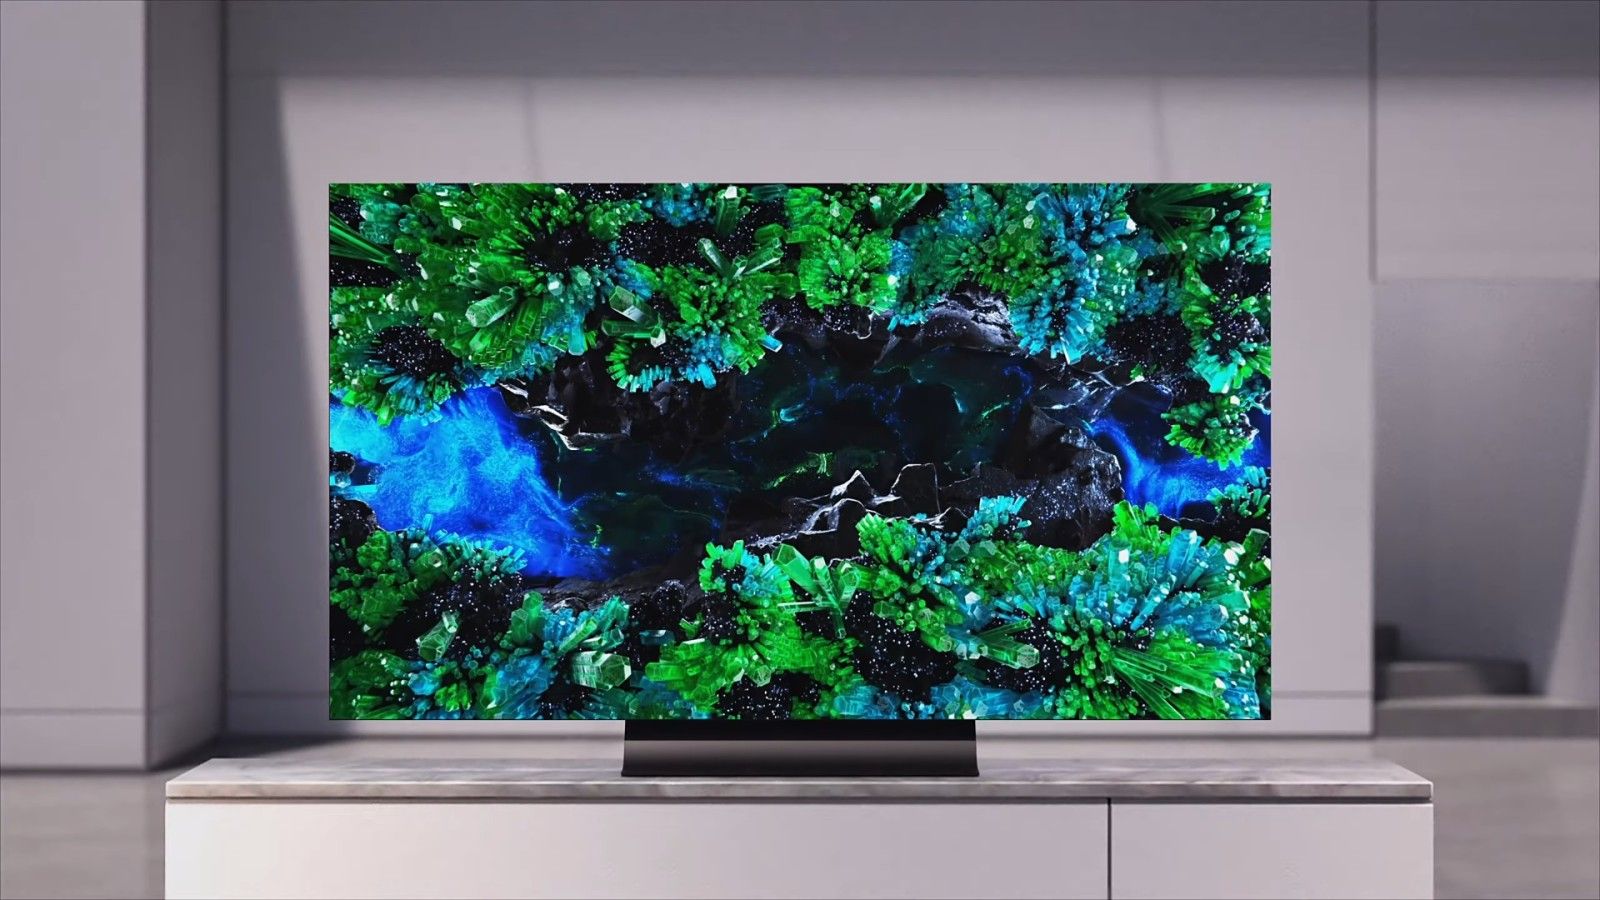 VIZIO OLED Smart TV Featured Image